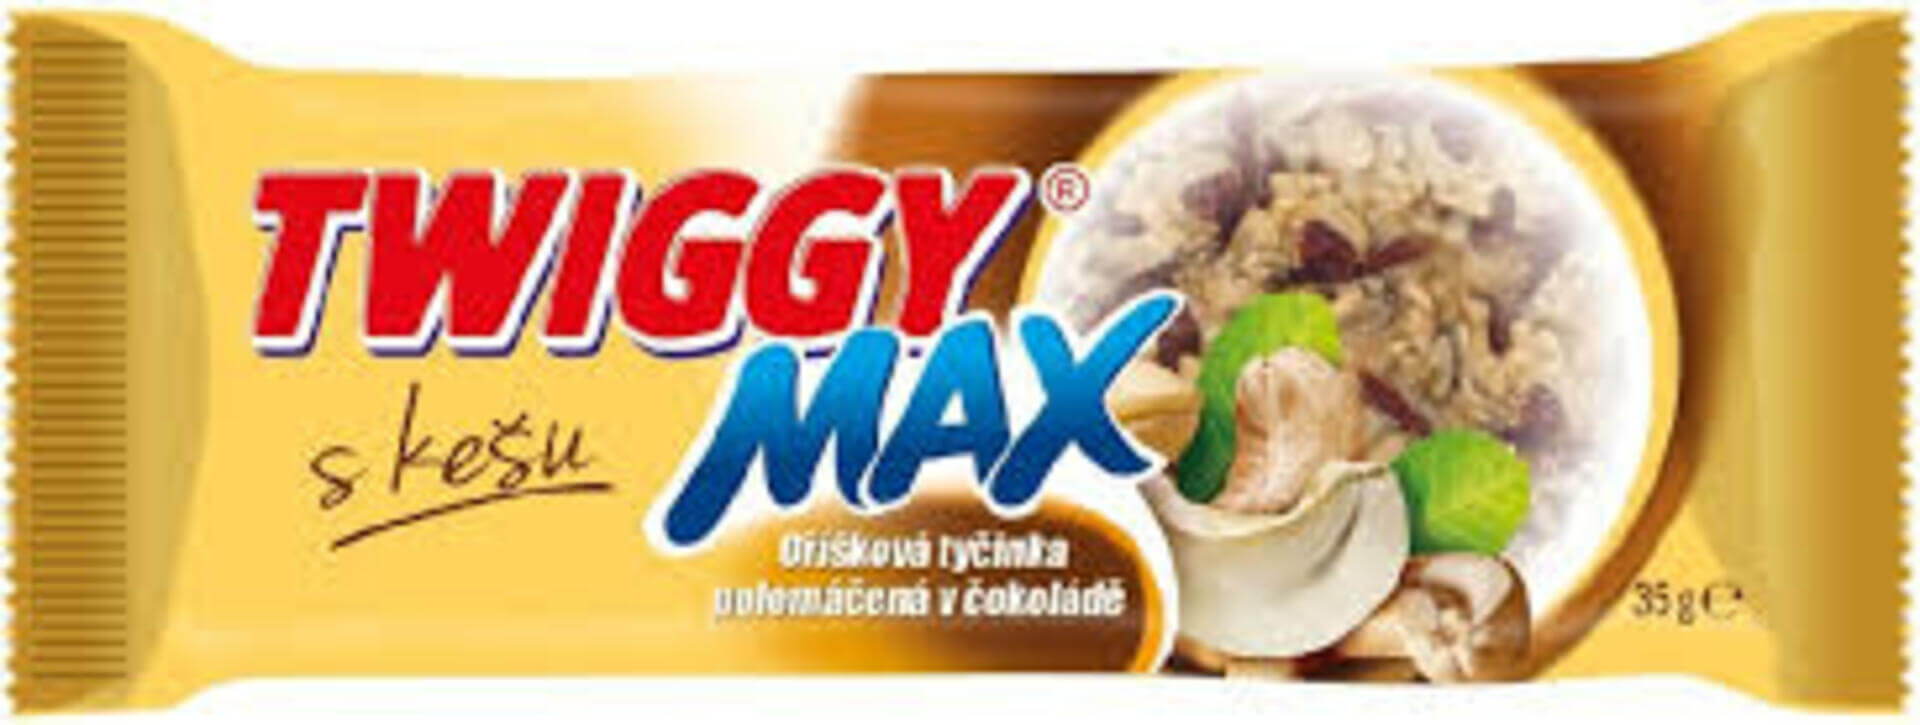 E-shop Twiggy Max s kešu polomáčaná v čokoláde 35 g